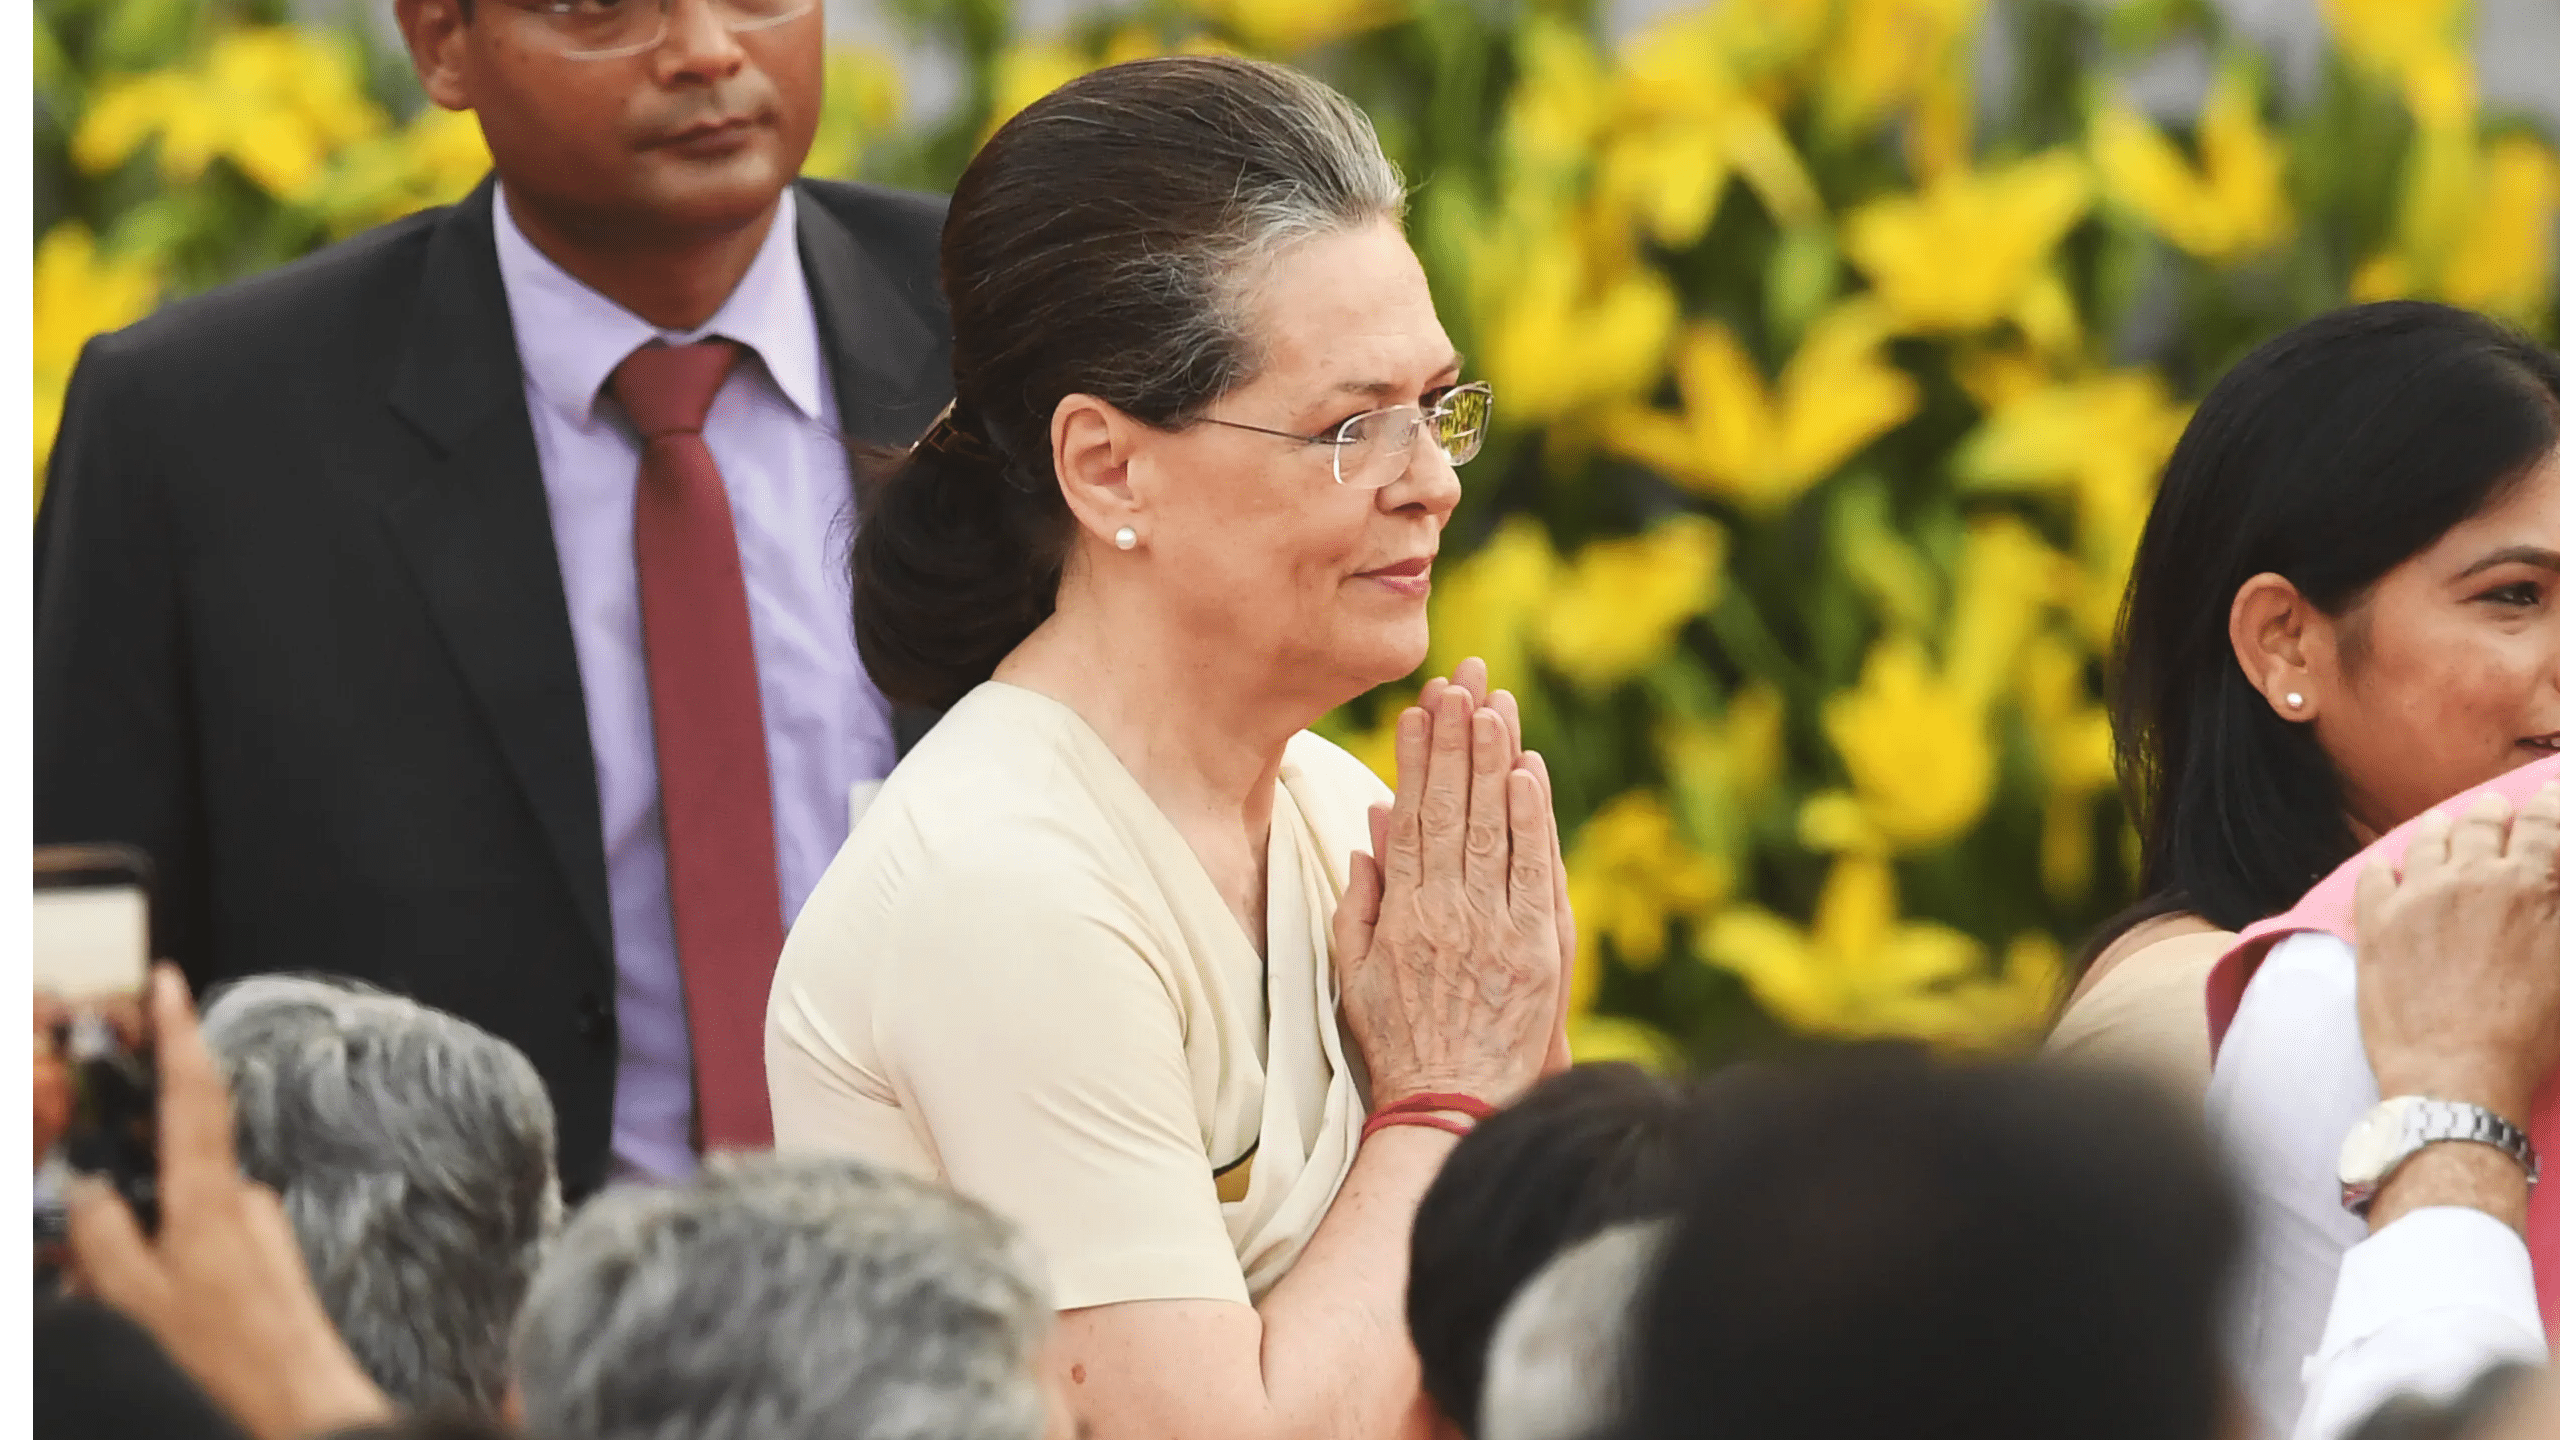 Crisis averted, Sonia Gandhi signals bygones are bygones